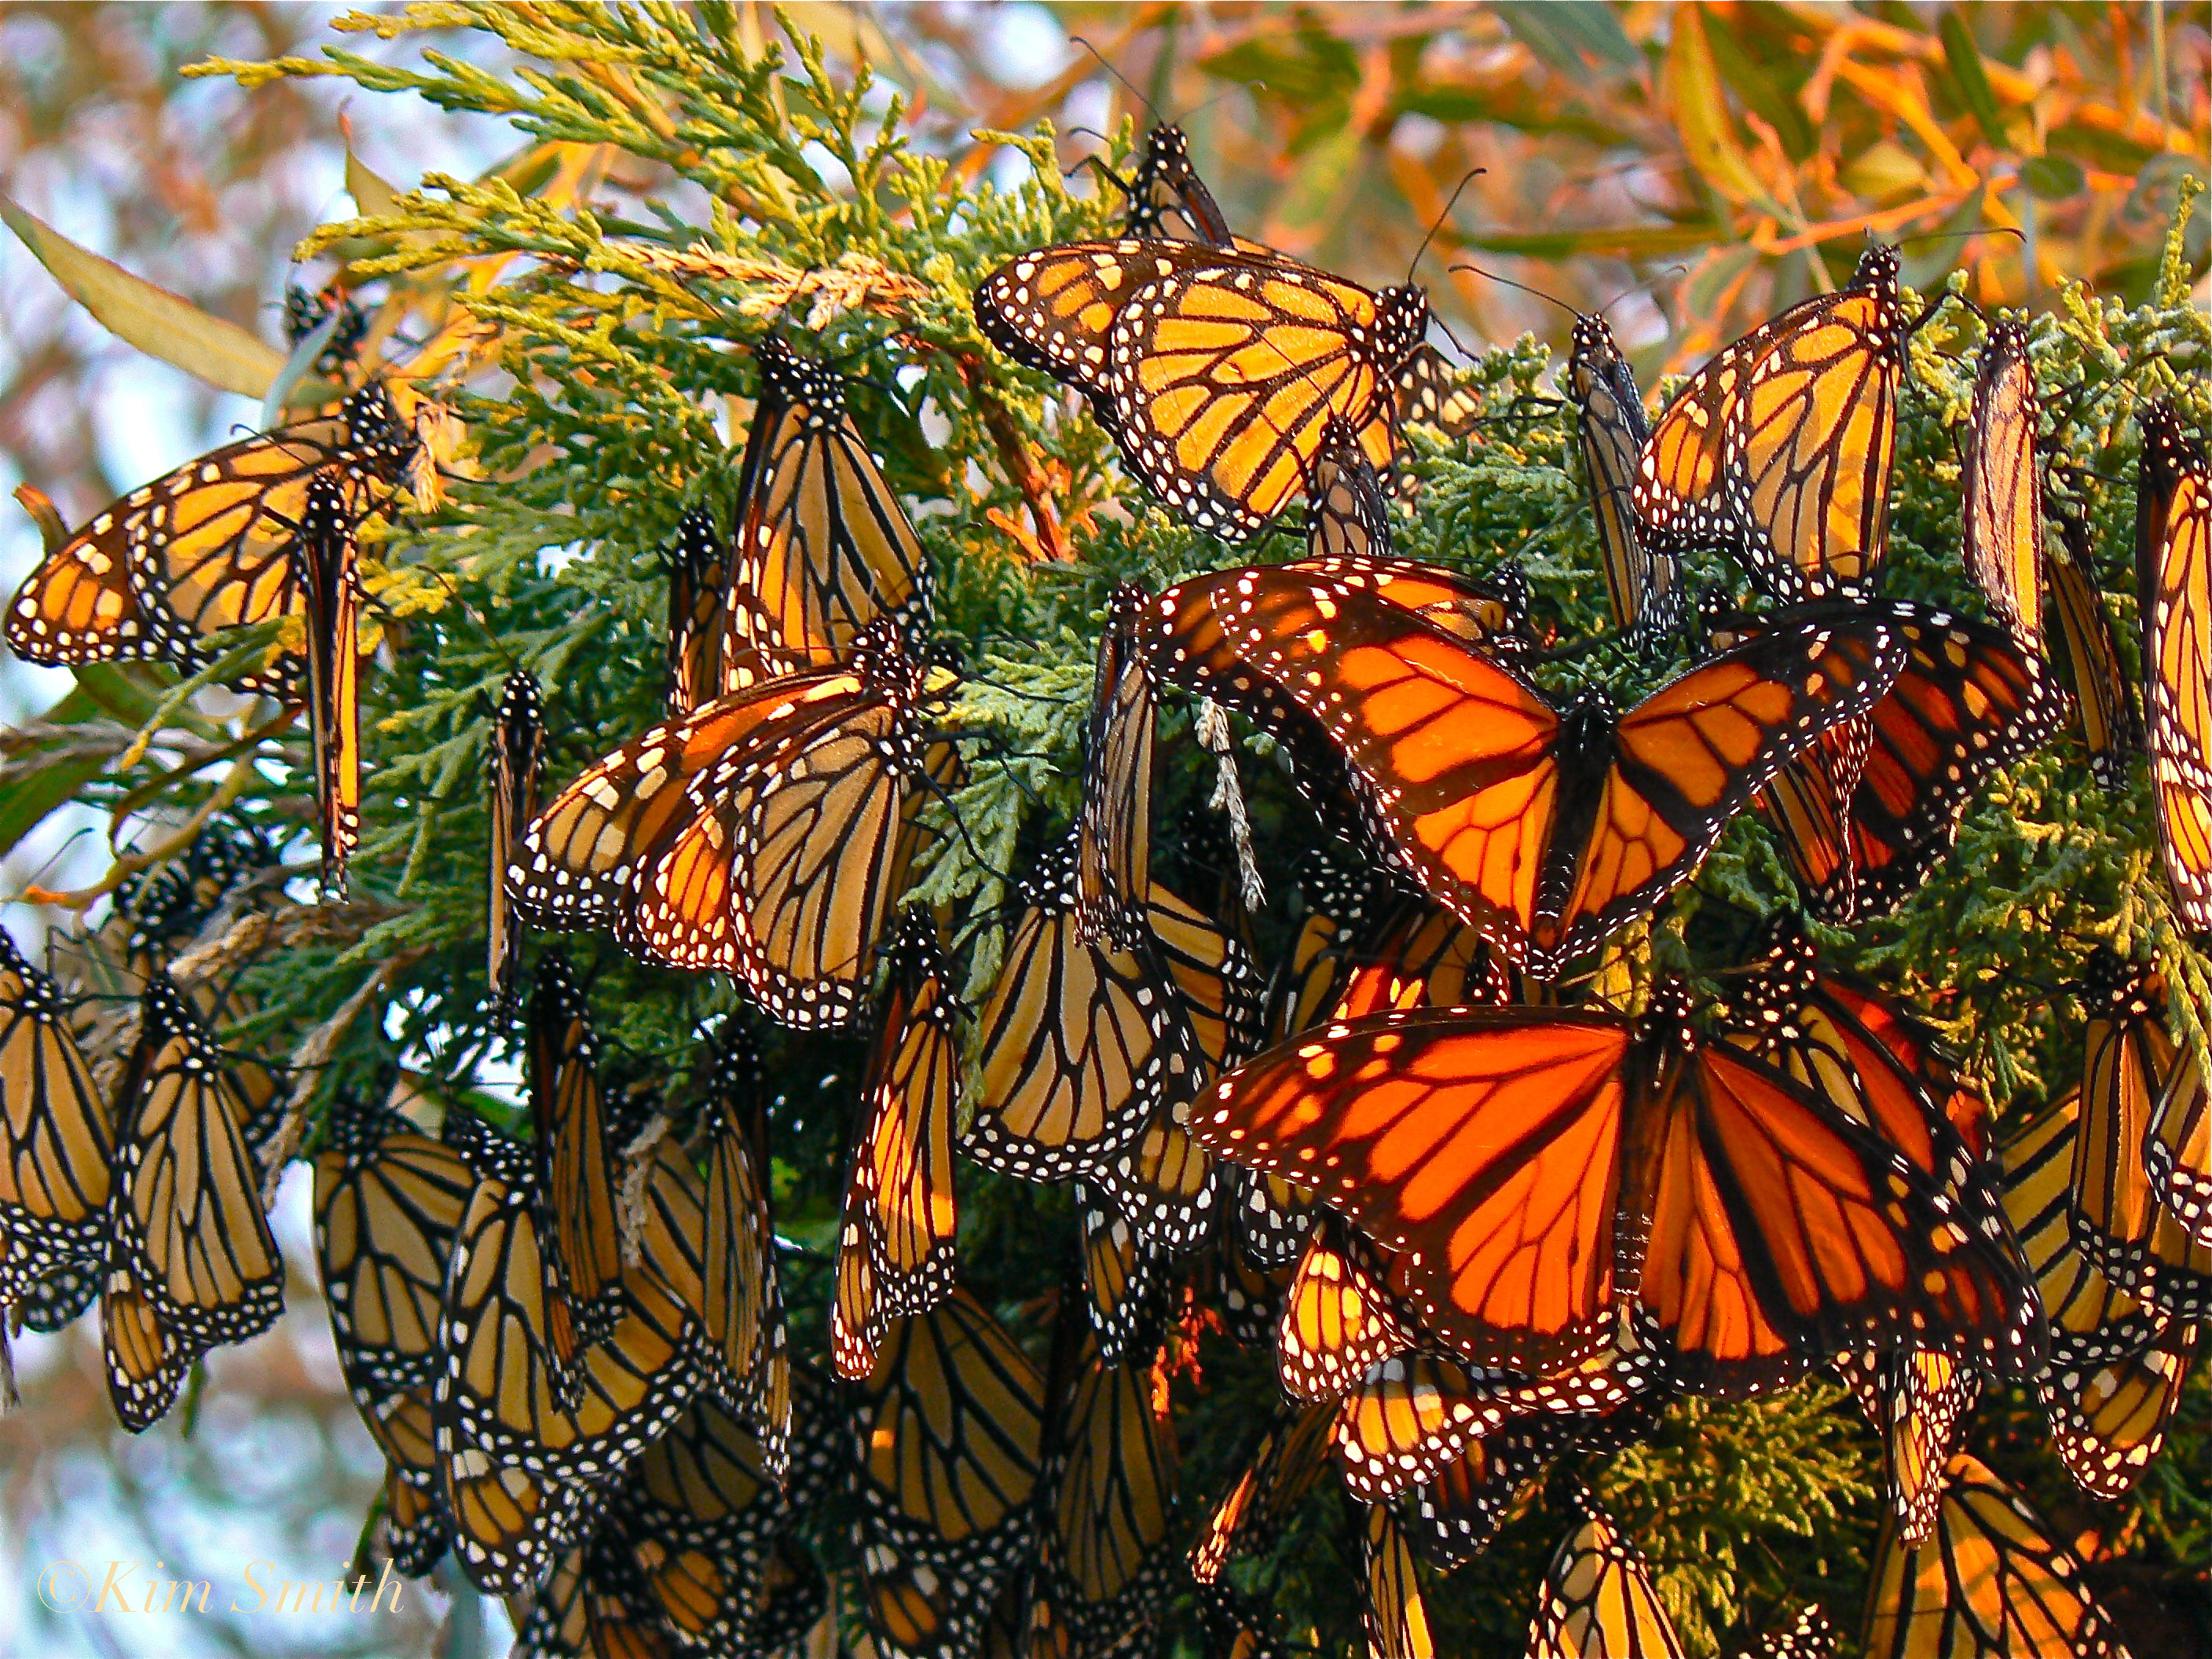 monarch-butterflies-gloucester-massachusetts-c2a9kim-smith-2006.jpg